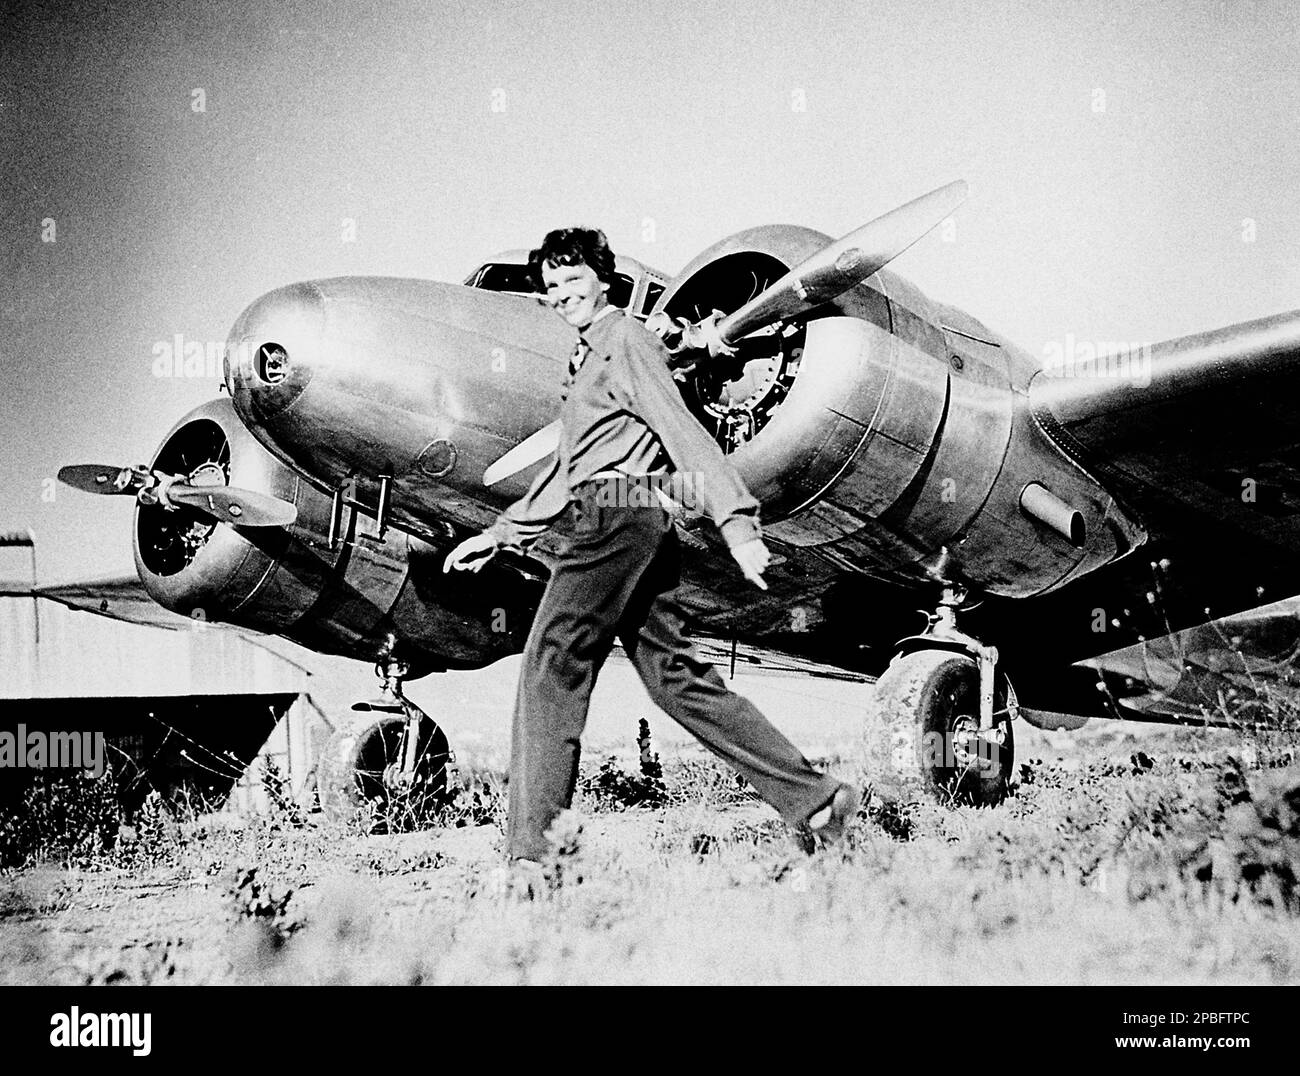 1937 Ca , USA : Porträts der berühmtesten Pilotenfrau AMELIA EARHART ( 1897 - 1937 ) und Lockheed L-10E Electra NR 16020 . Earhart war die erste Frau, die das Distinguished Flying Cross erhielt, das sie als erste Flugzeugin erhielt, die allein über den Atlantischen Ozean flog. Sie stellte viele andere Rekorde auf, schrieb Bestsellerbücher über ihre Flugerfahrungen und war maßgeblich an der Gründung der neunundneunzig, einer Organisation für Piloteninnen. Während eines Versuchs, 1937 einen Rundflug um den Globus zu machen, verschwand Earhart über dem zentralen Pazifik nahe Howl Stockfoto